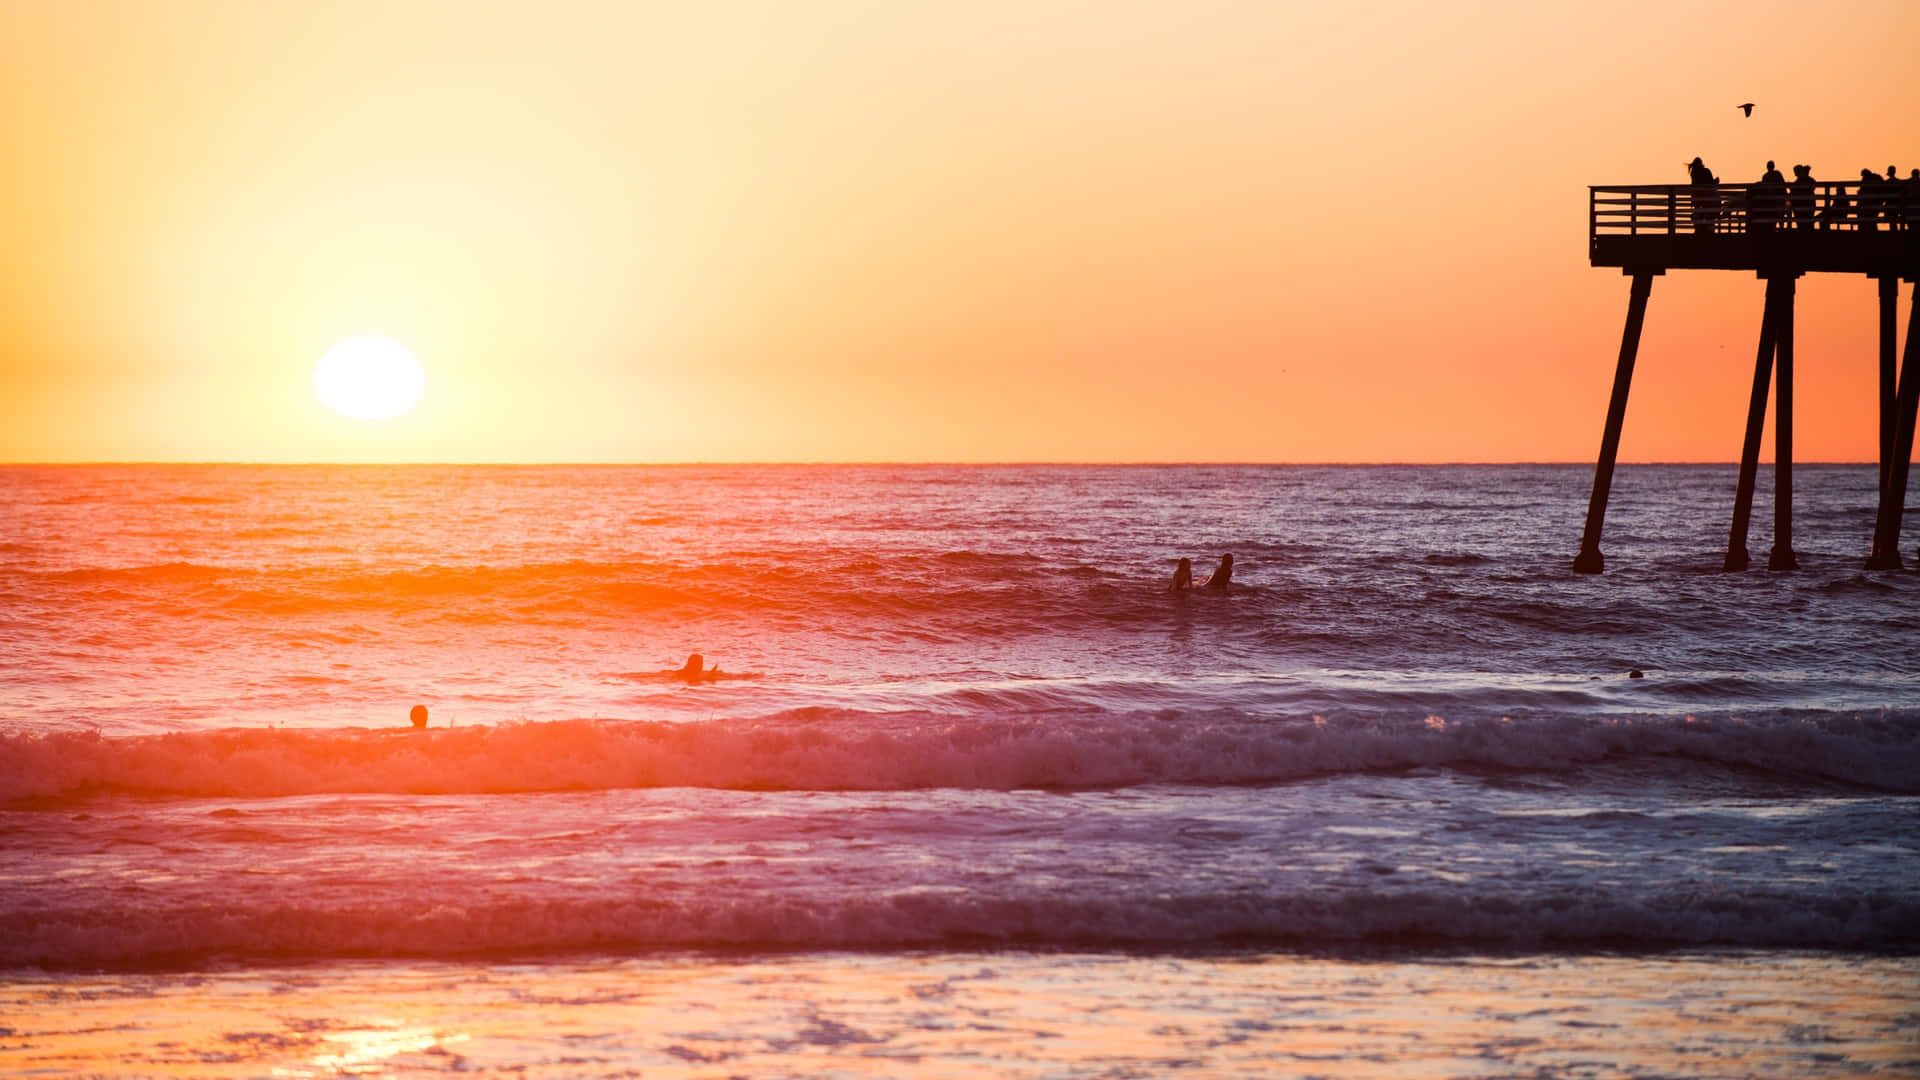 Sunset Surfers Beach Pier Silhouette Wallpaper